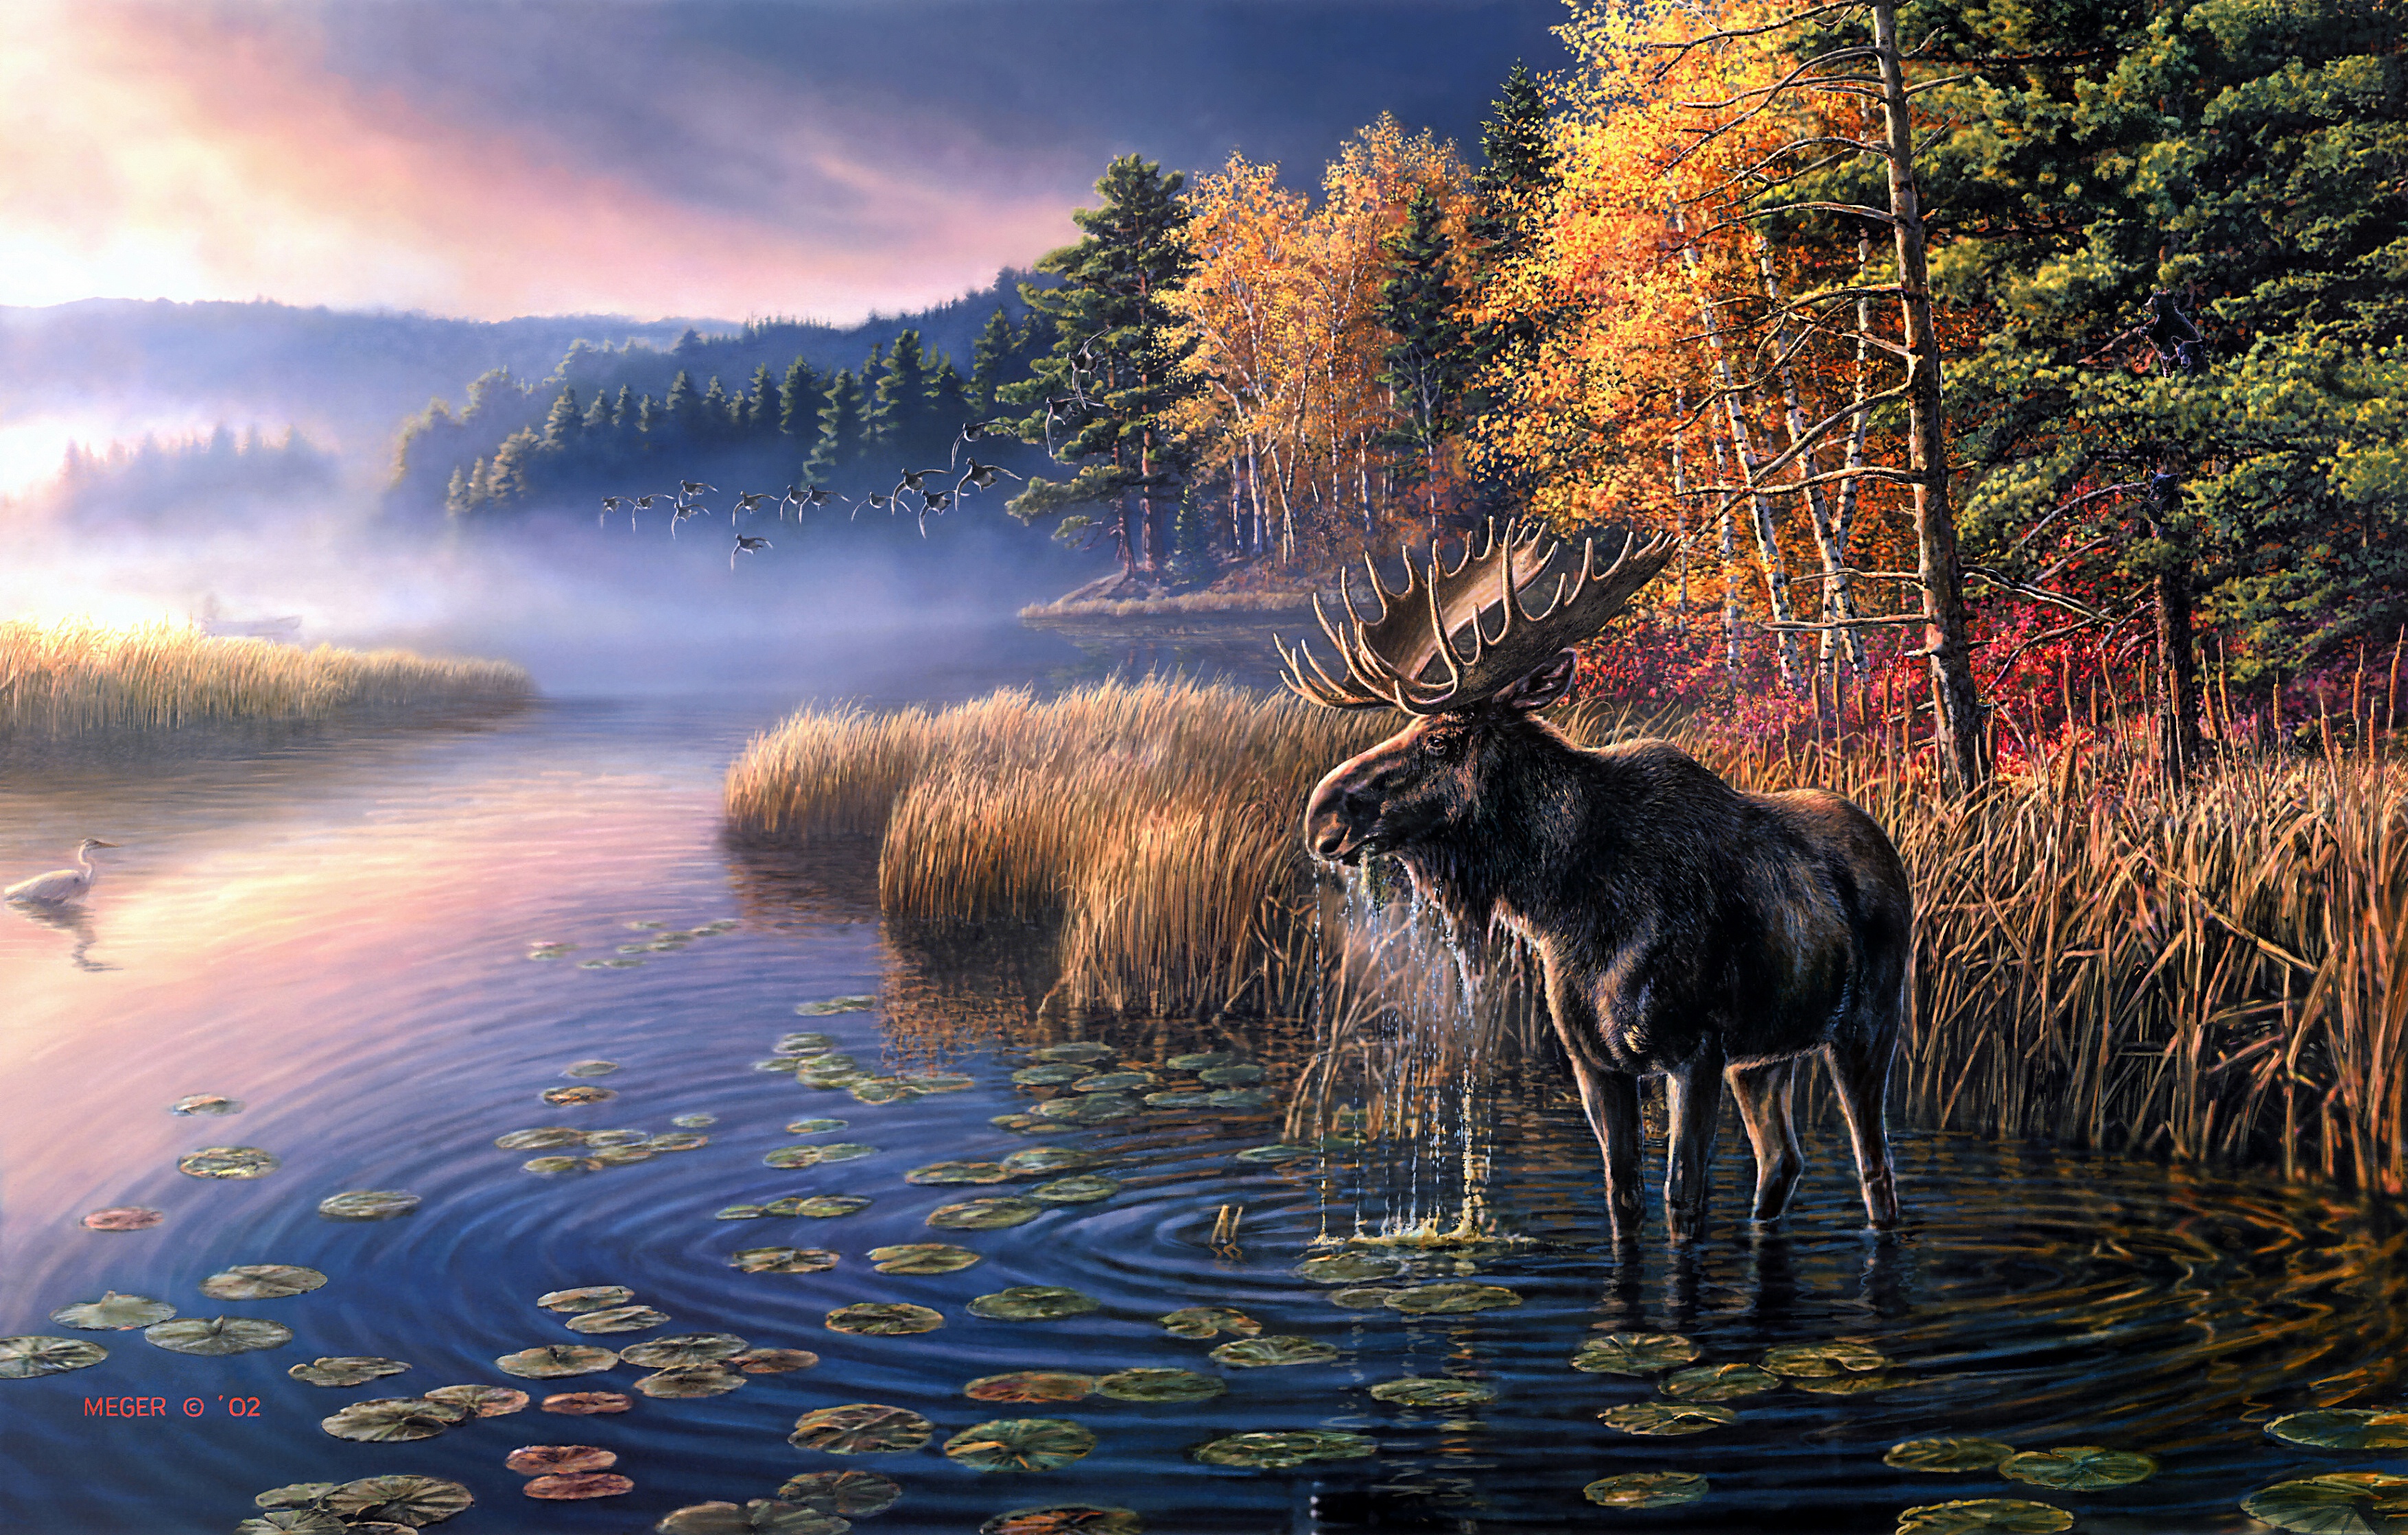 Free download wallpaper Dawn, Heron, Lake, Bird, Fog, Fall, Animal, Moose on your PC desktop